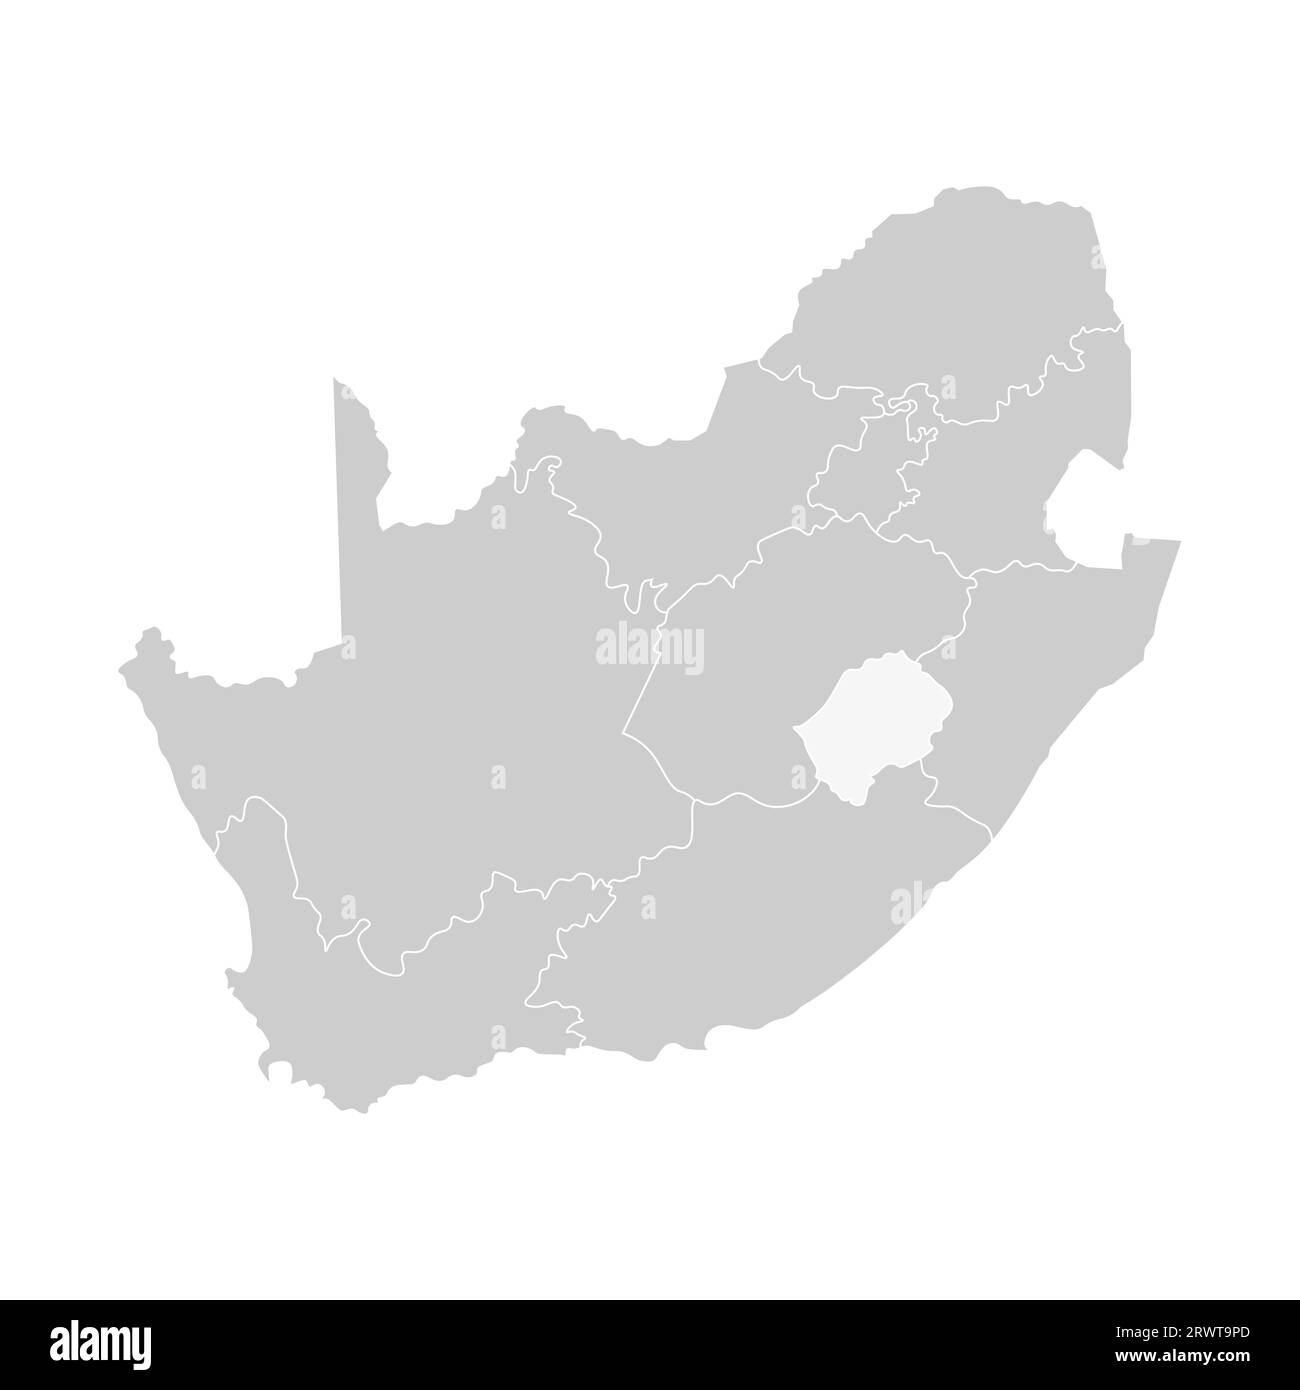 Illustrazione vettoriale isolata della mappa amministrativa semplificata del Sudafrica. Confini delle province (regioni). Silhouette grigie. Contorno bianco. Illustrazione Vettoriale